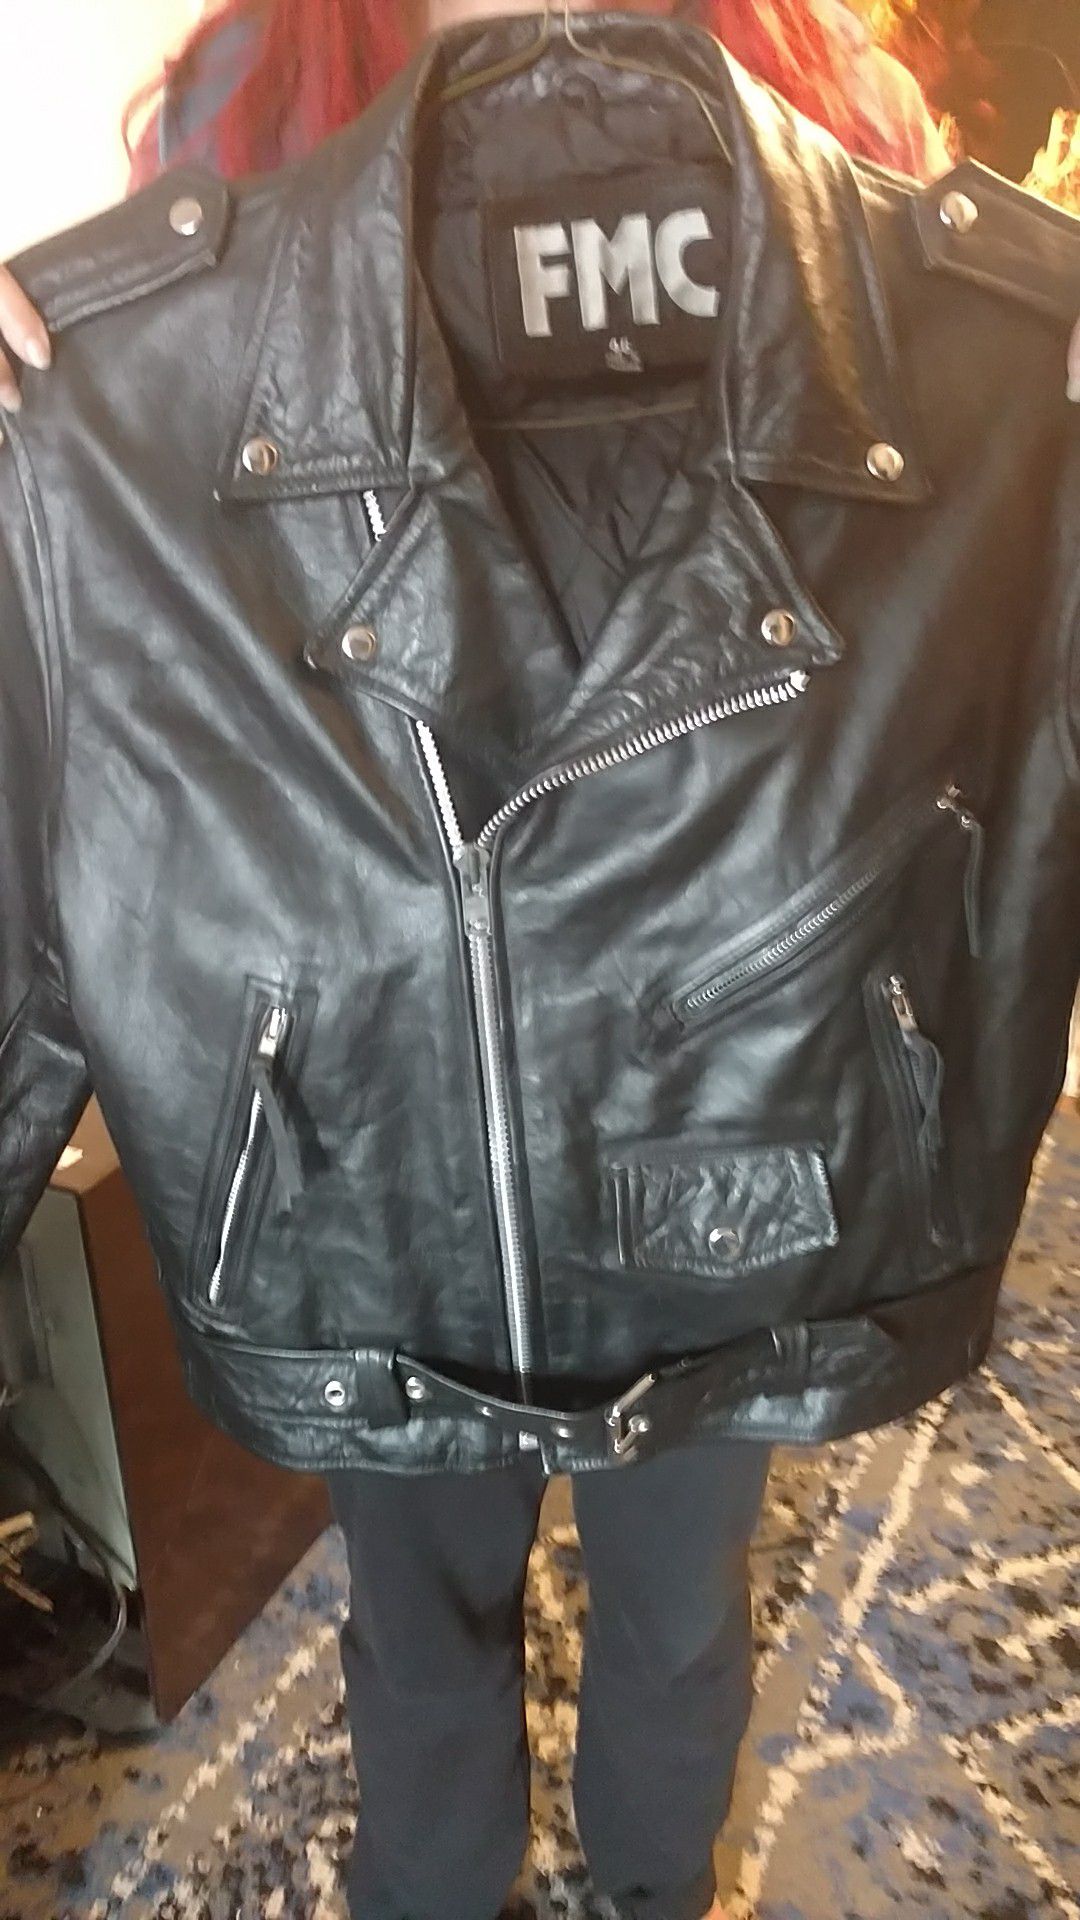 Megadeth leather jacket size 46